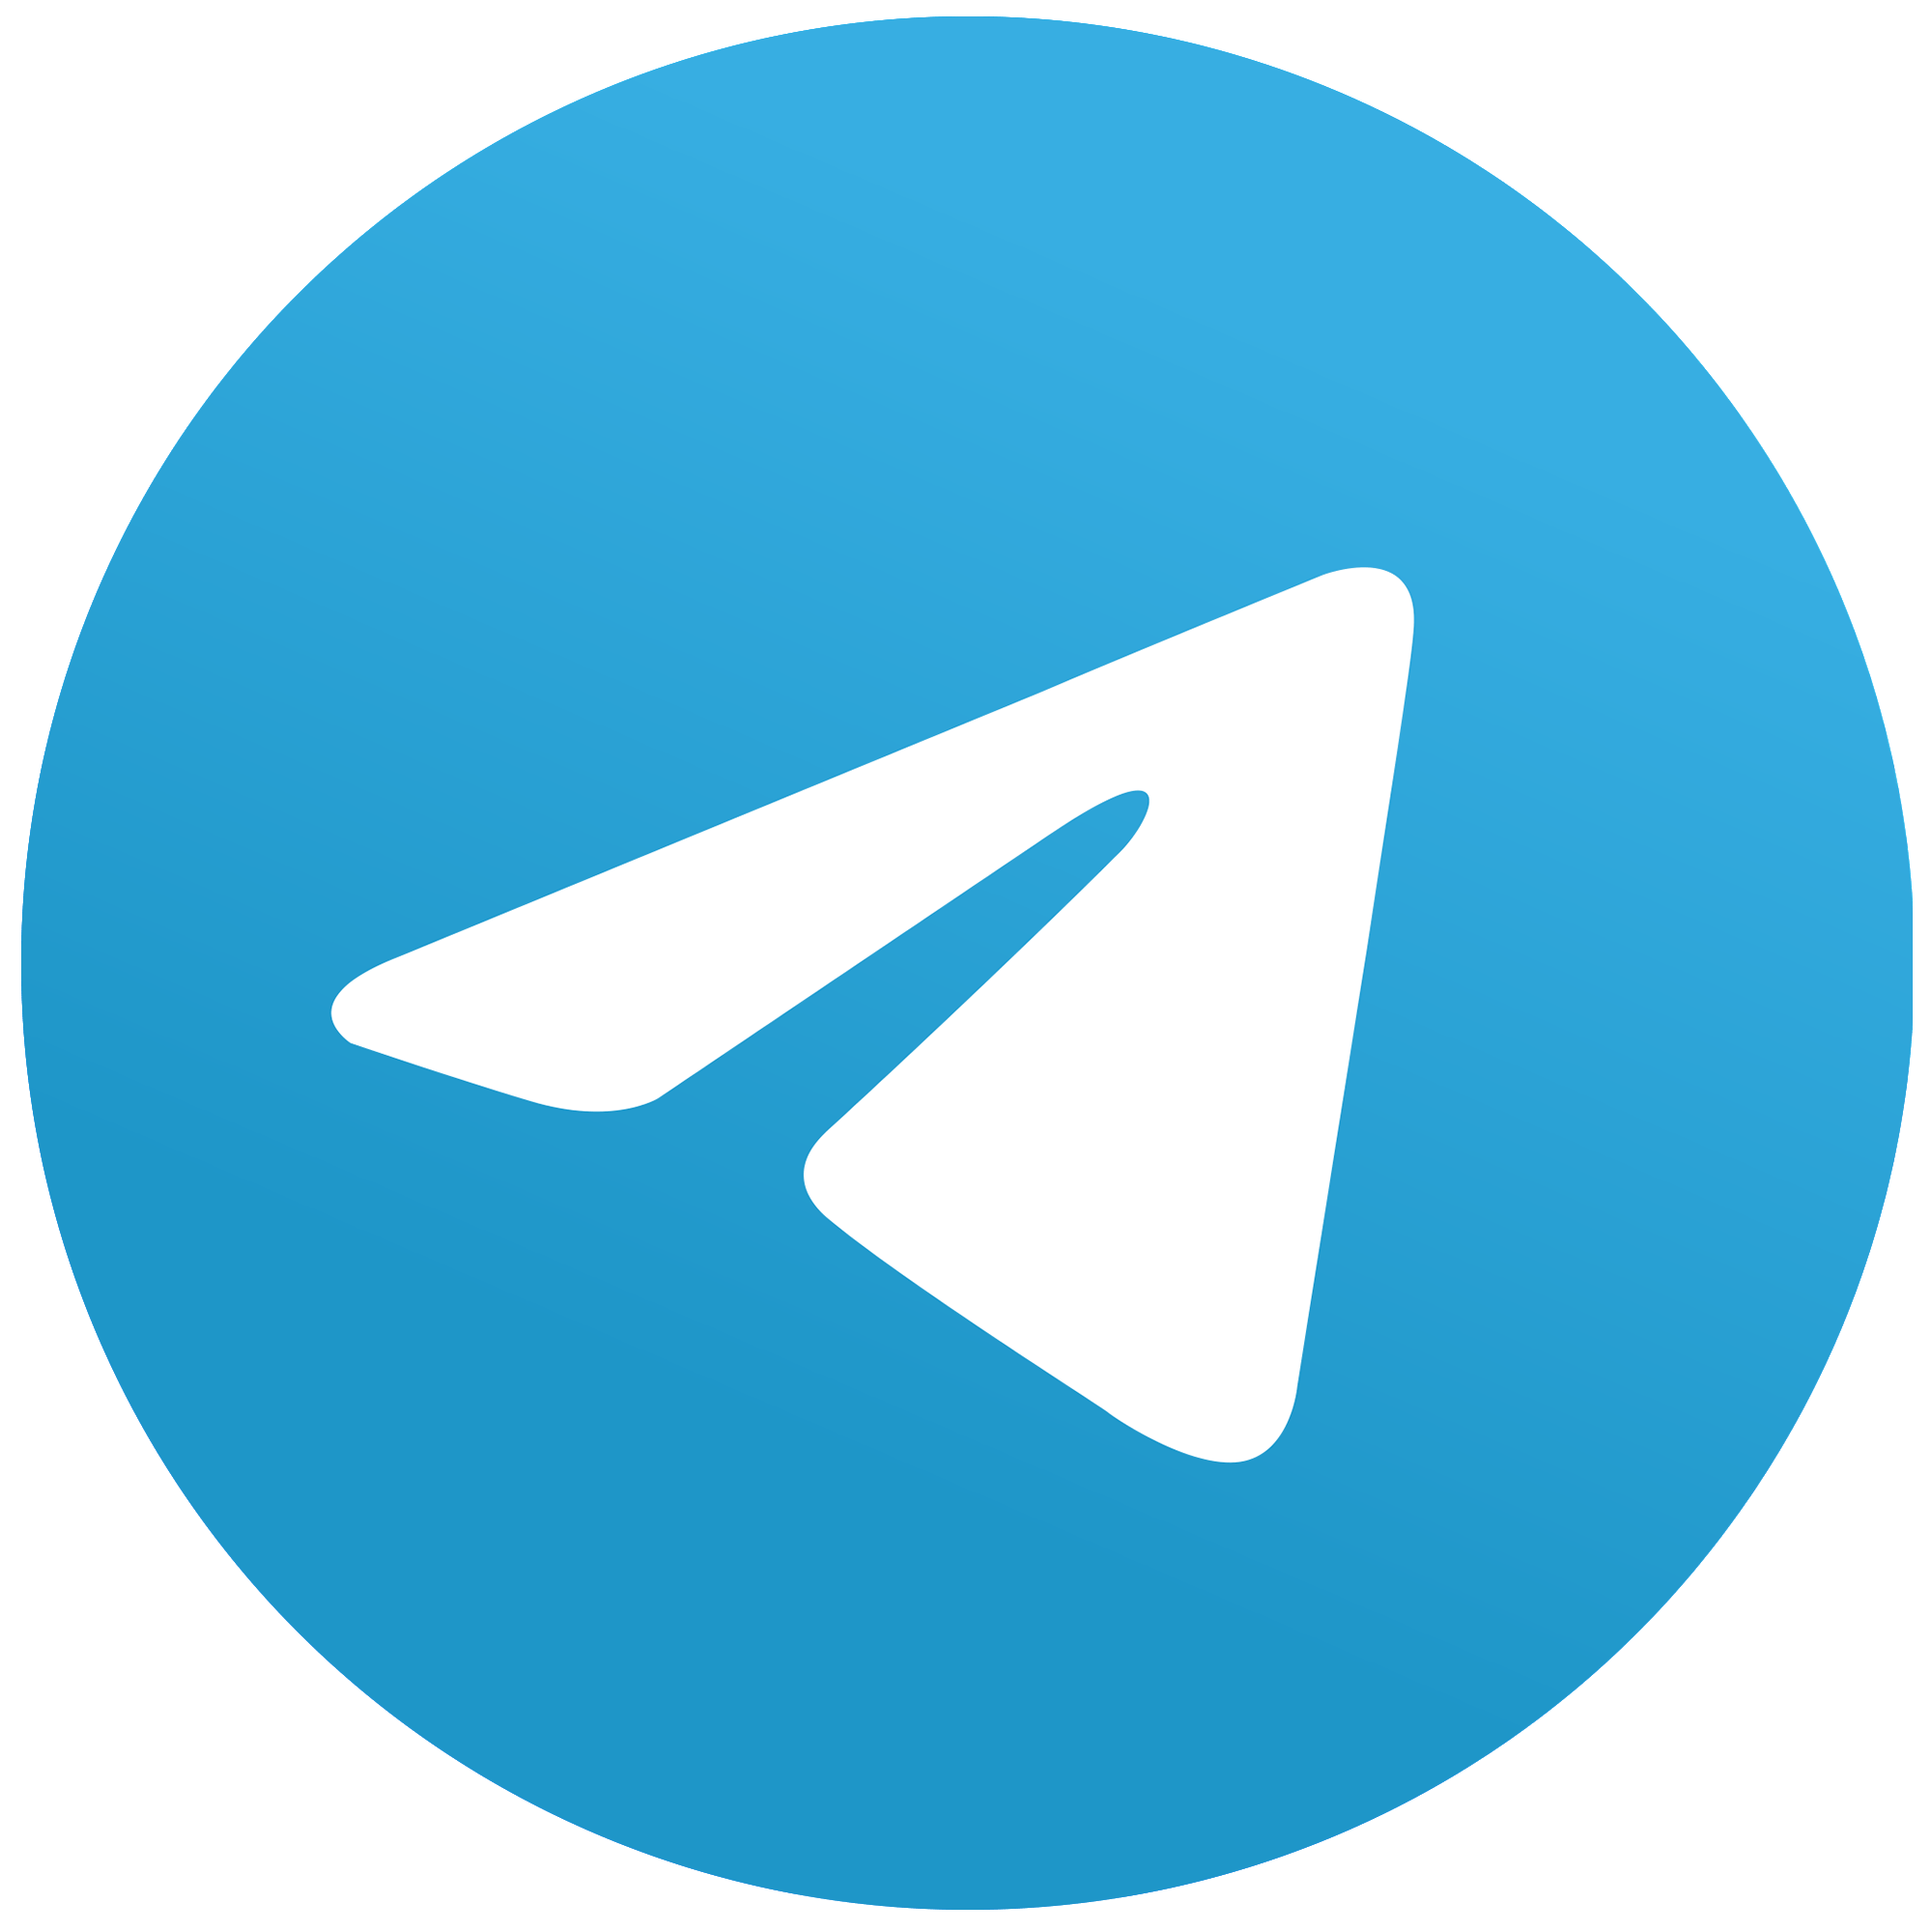 Pirate Deals Telegram Channel